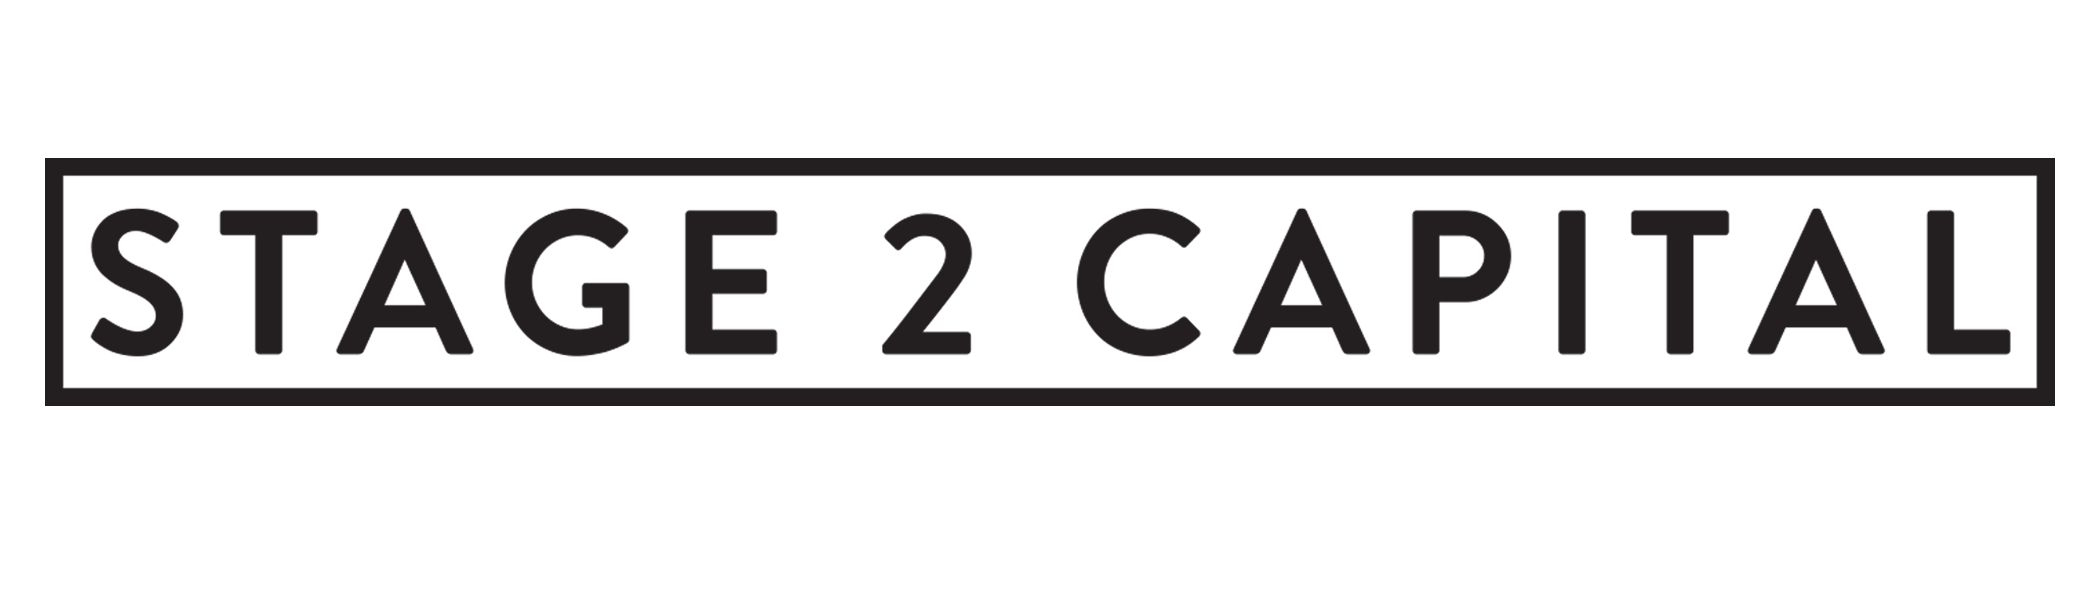 2018.01.14 Stage 2 Logo v.03 - final png